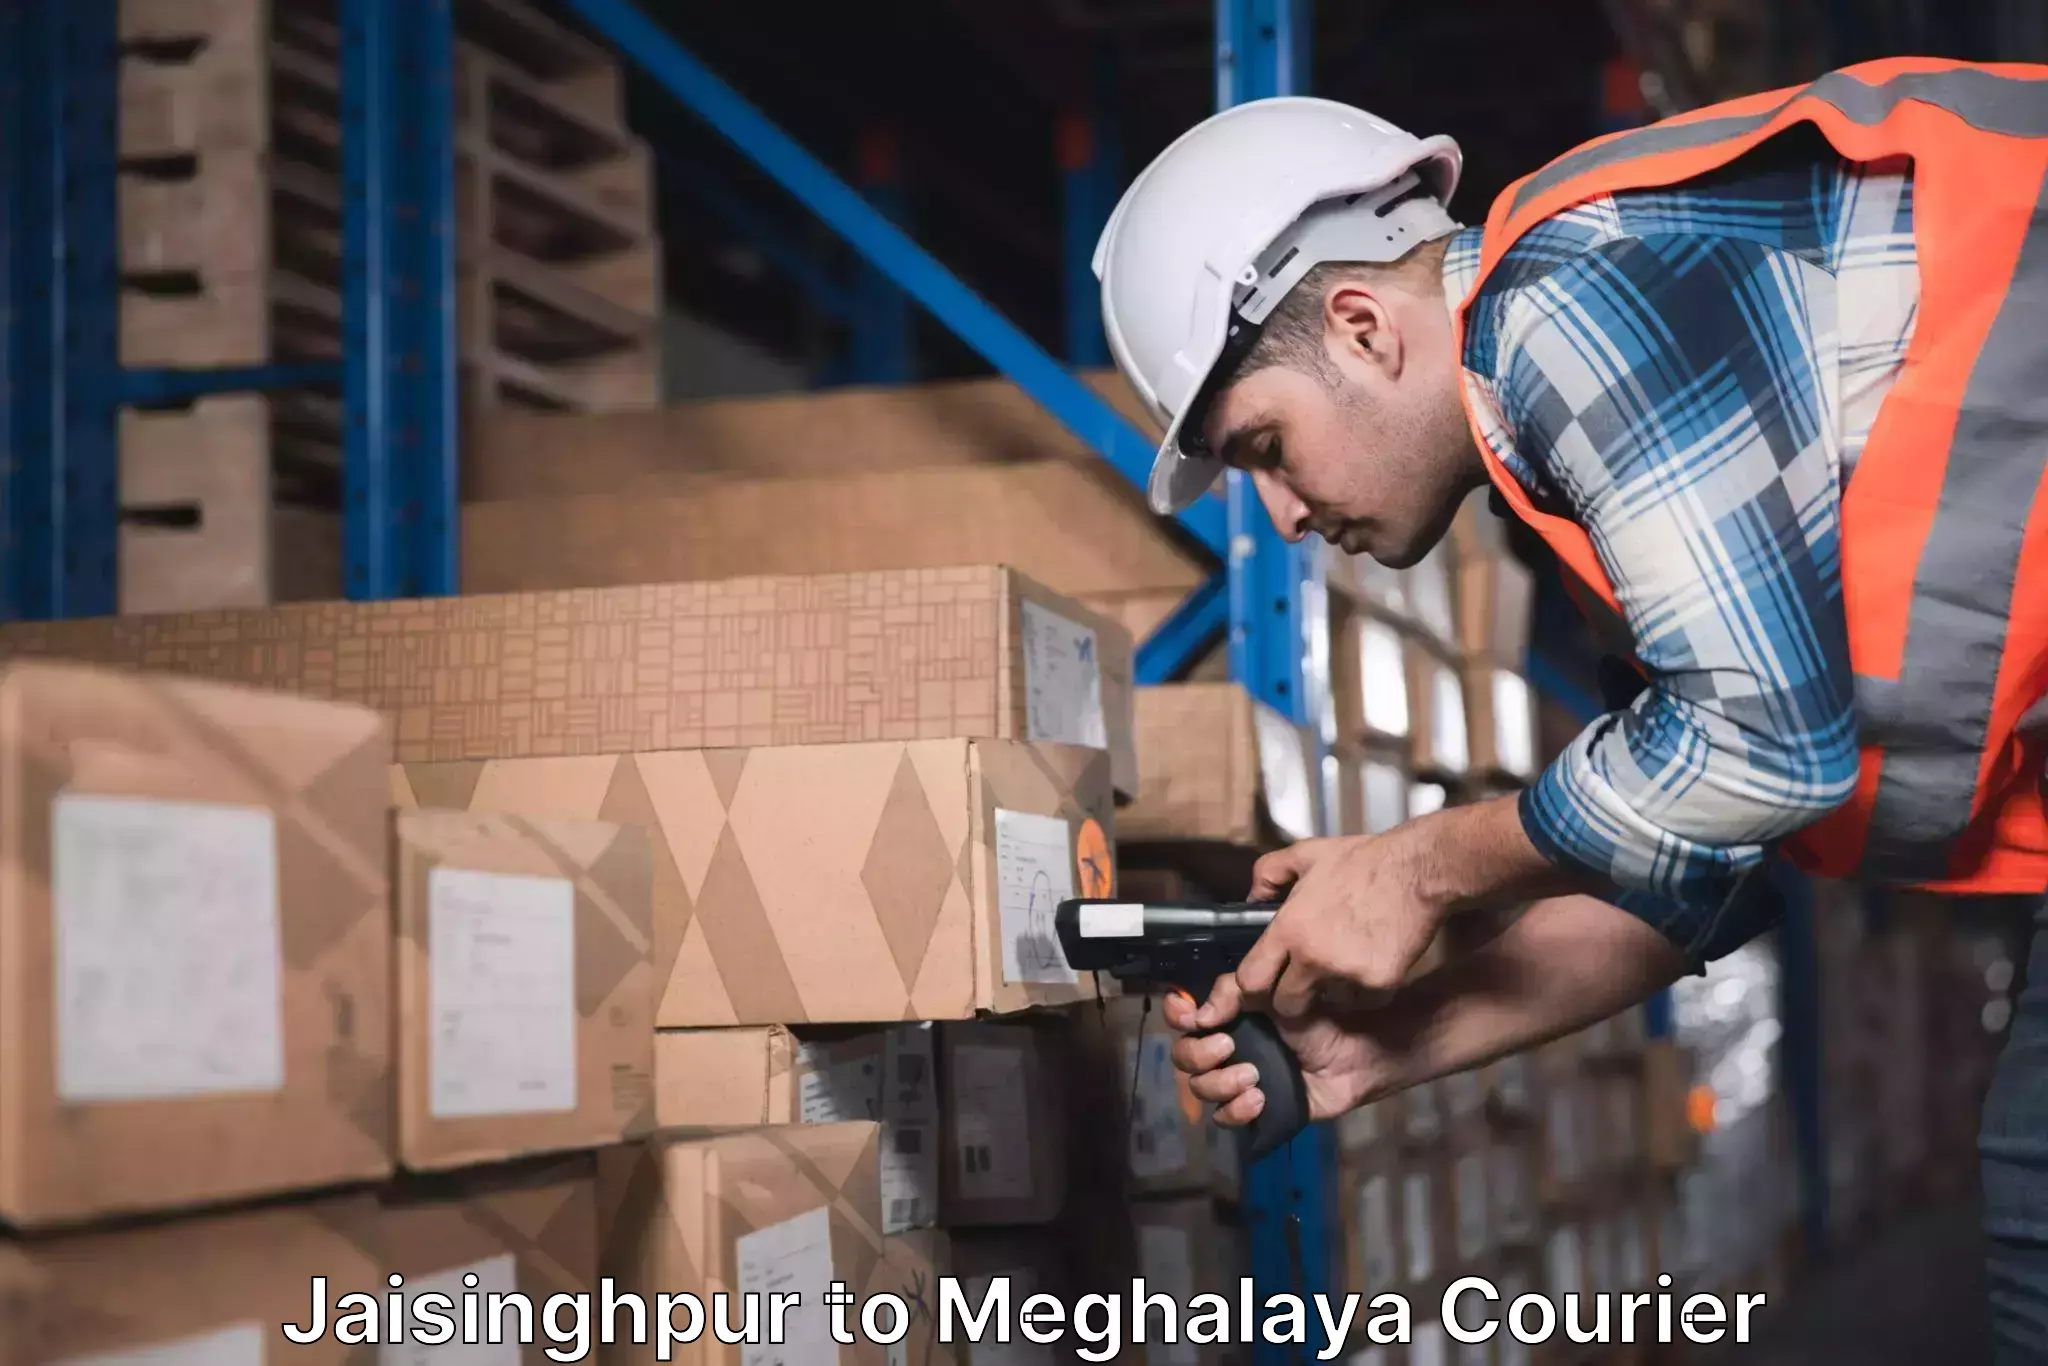 Custom courier rates in Jaisinghpur to Nongpoh